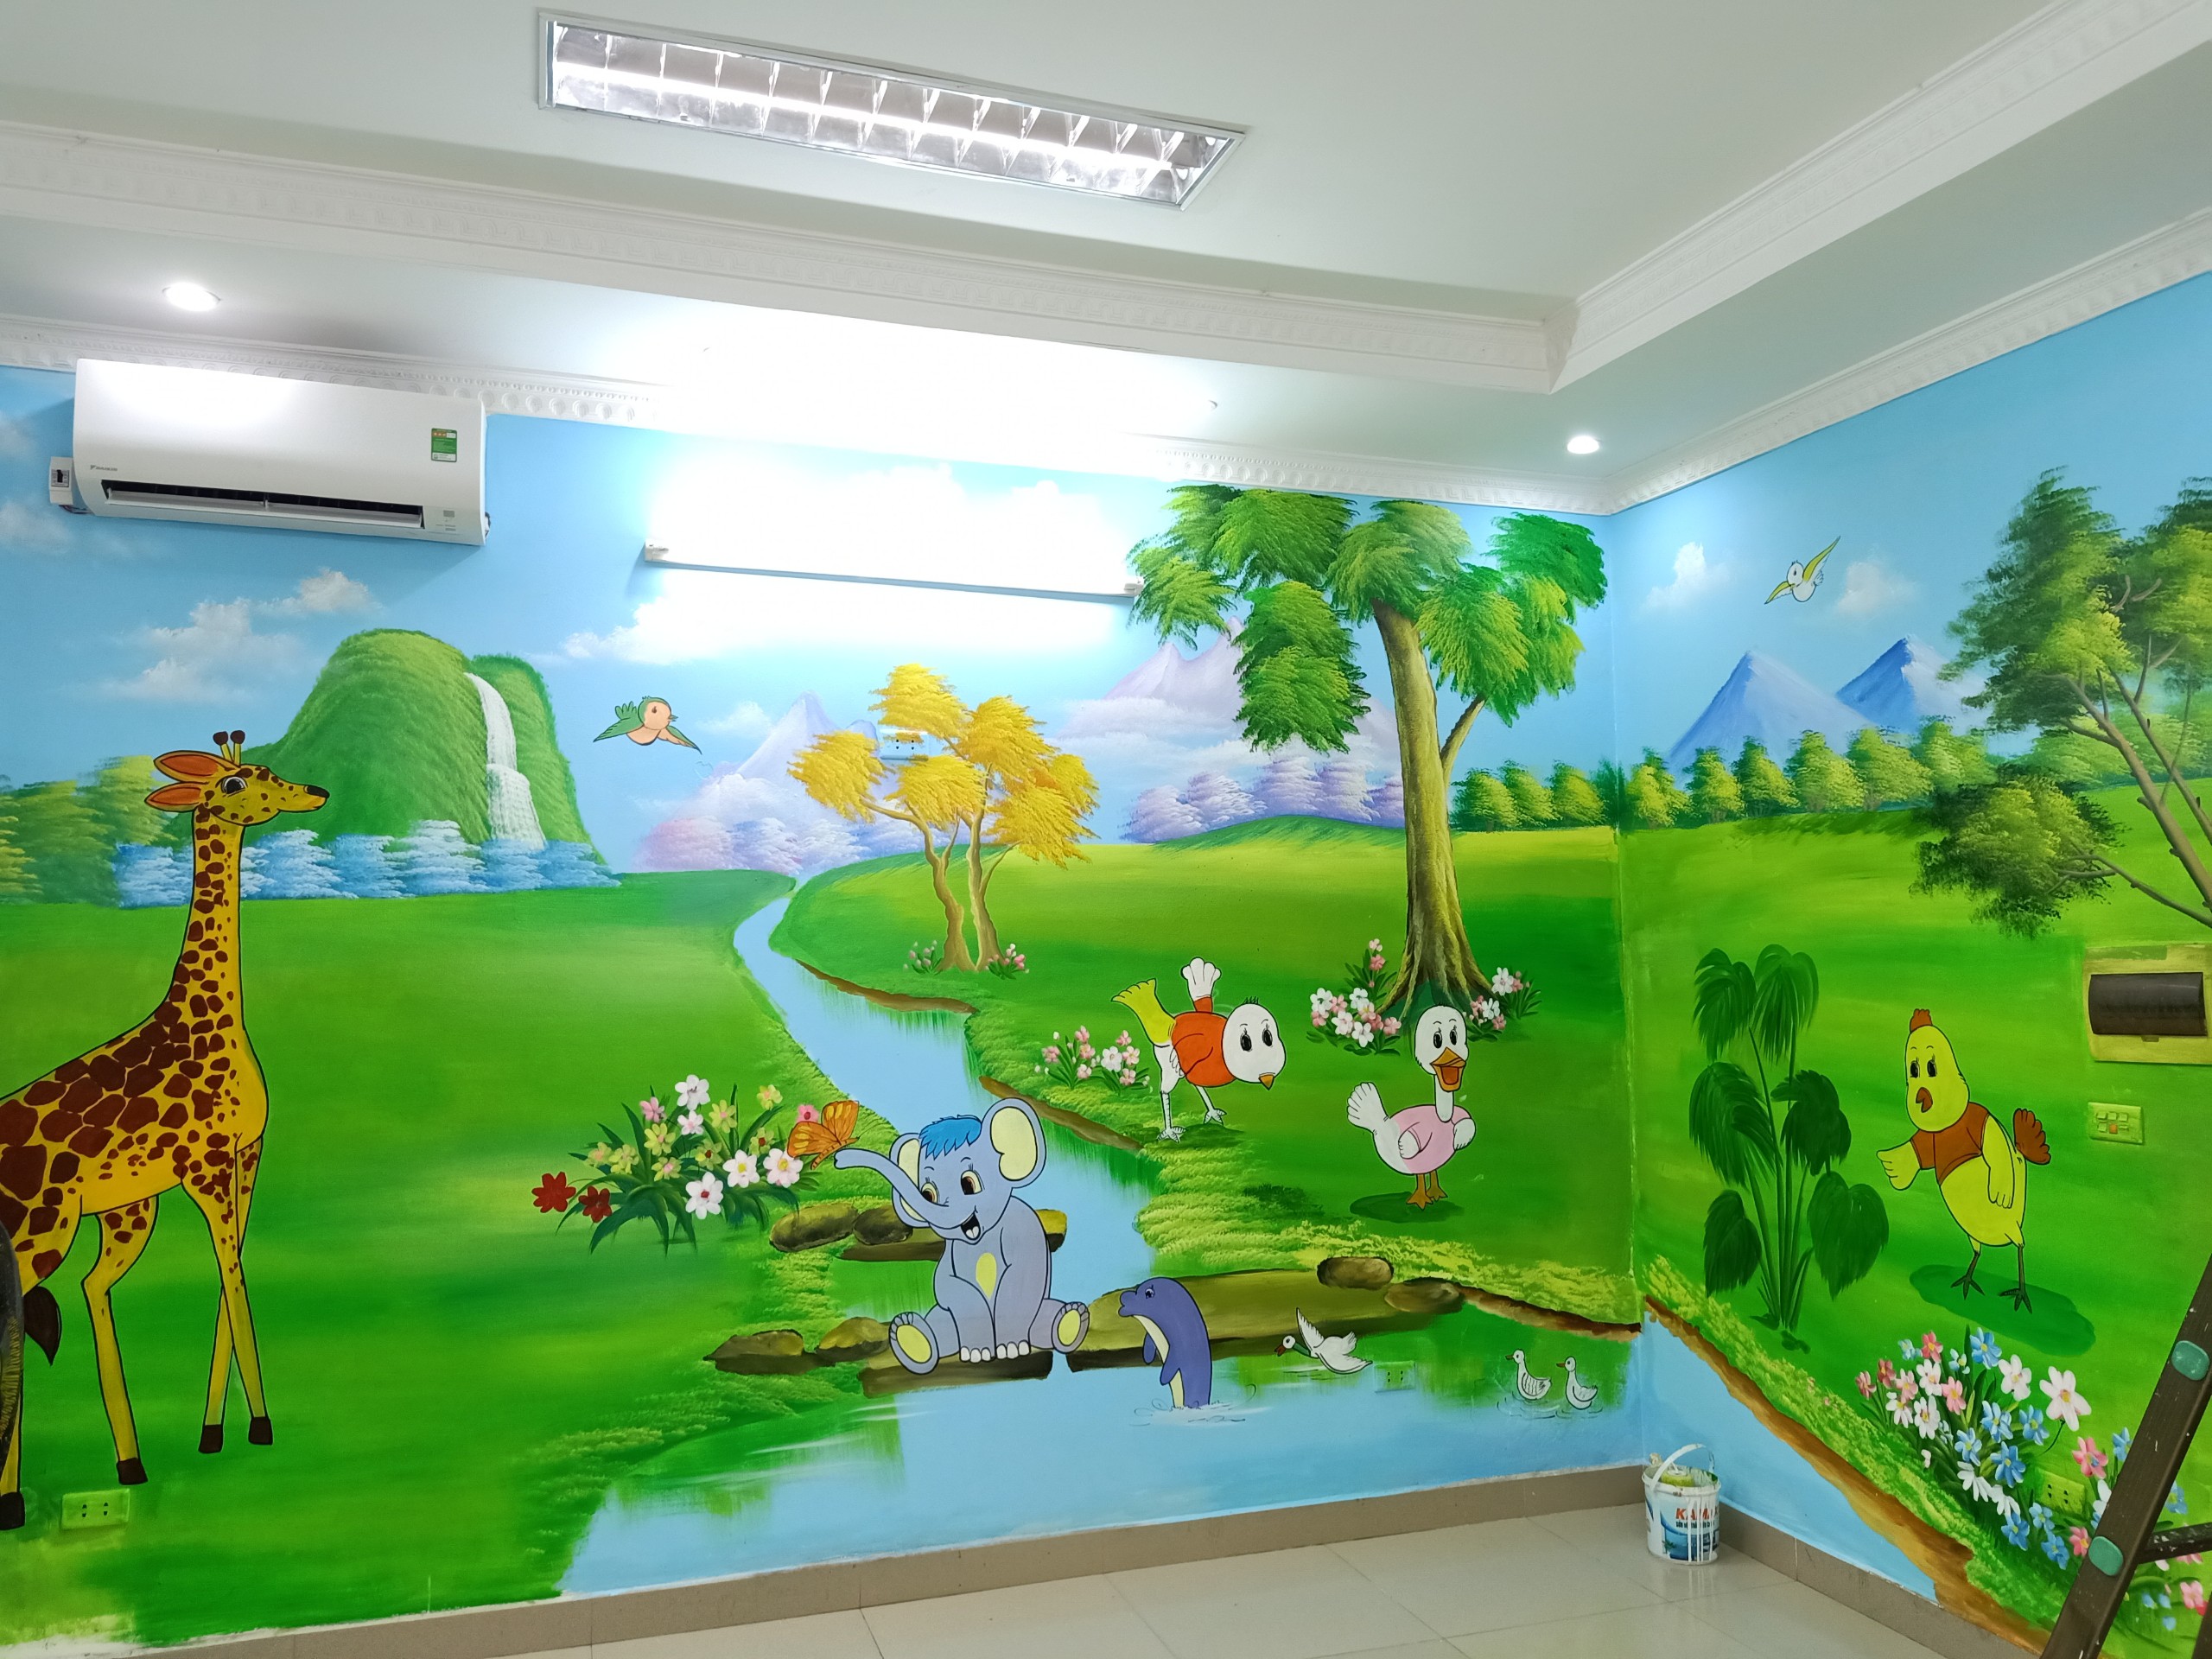 Tranh tường hoàn thiện tại Hà Nội